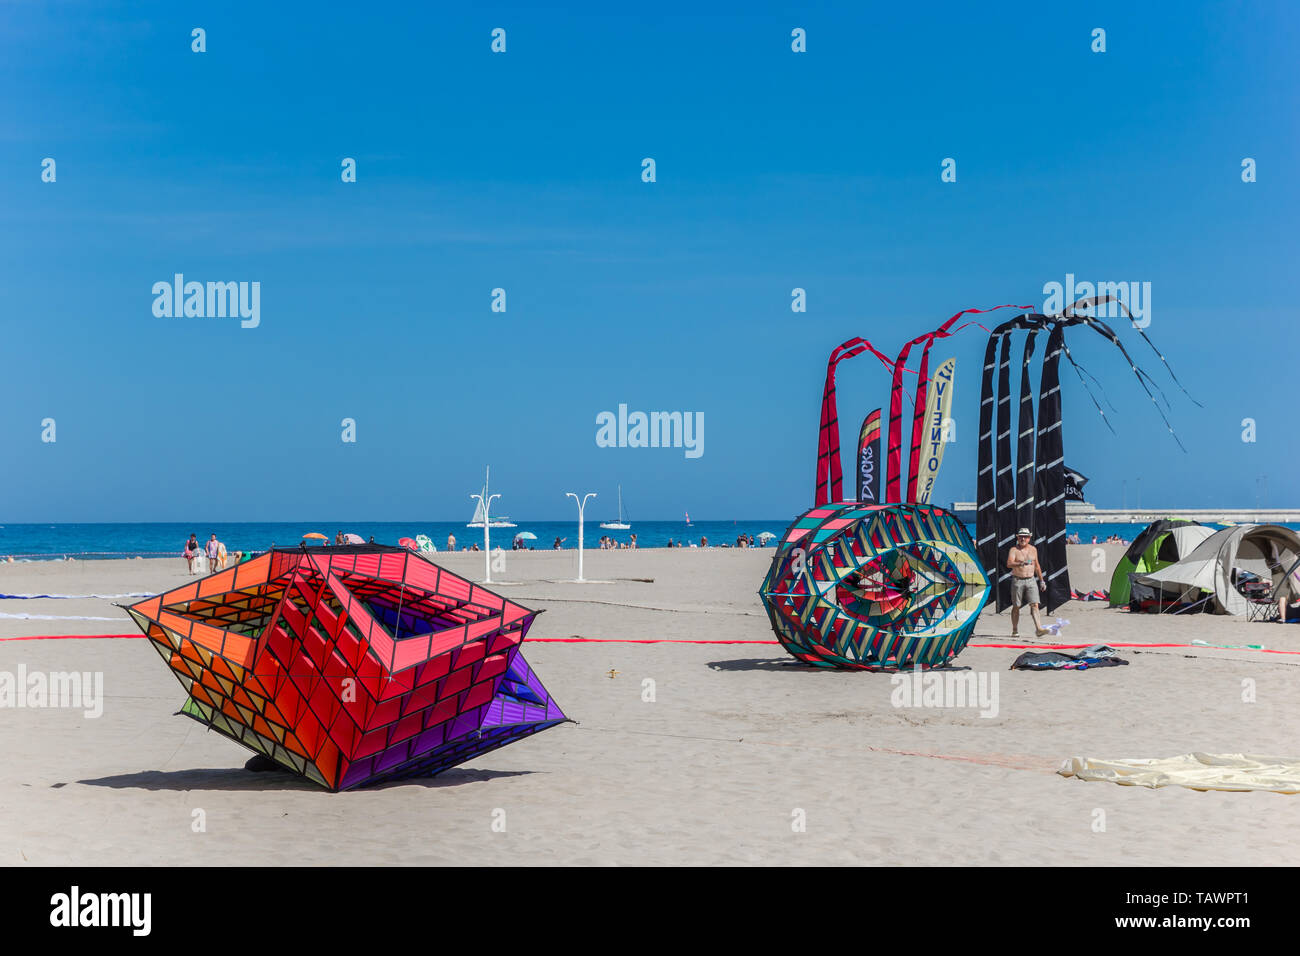 Riesige Drachen am Strand während der Kite Festival in Valencia, Spanien sitzen Stockfoto